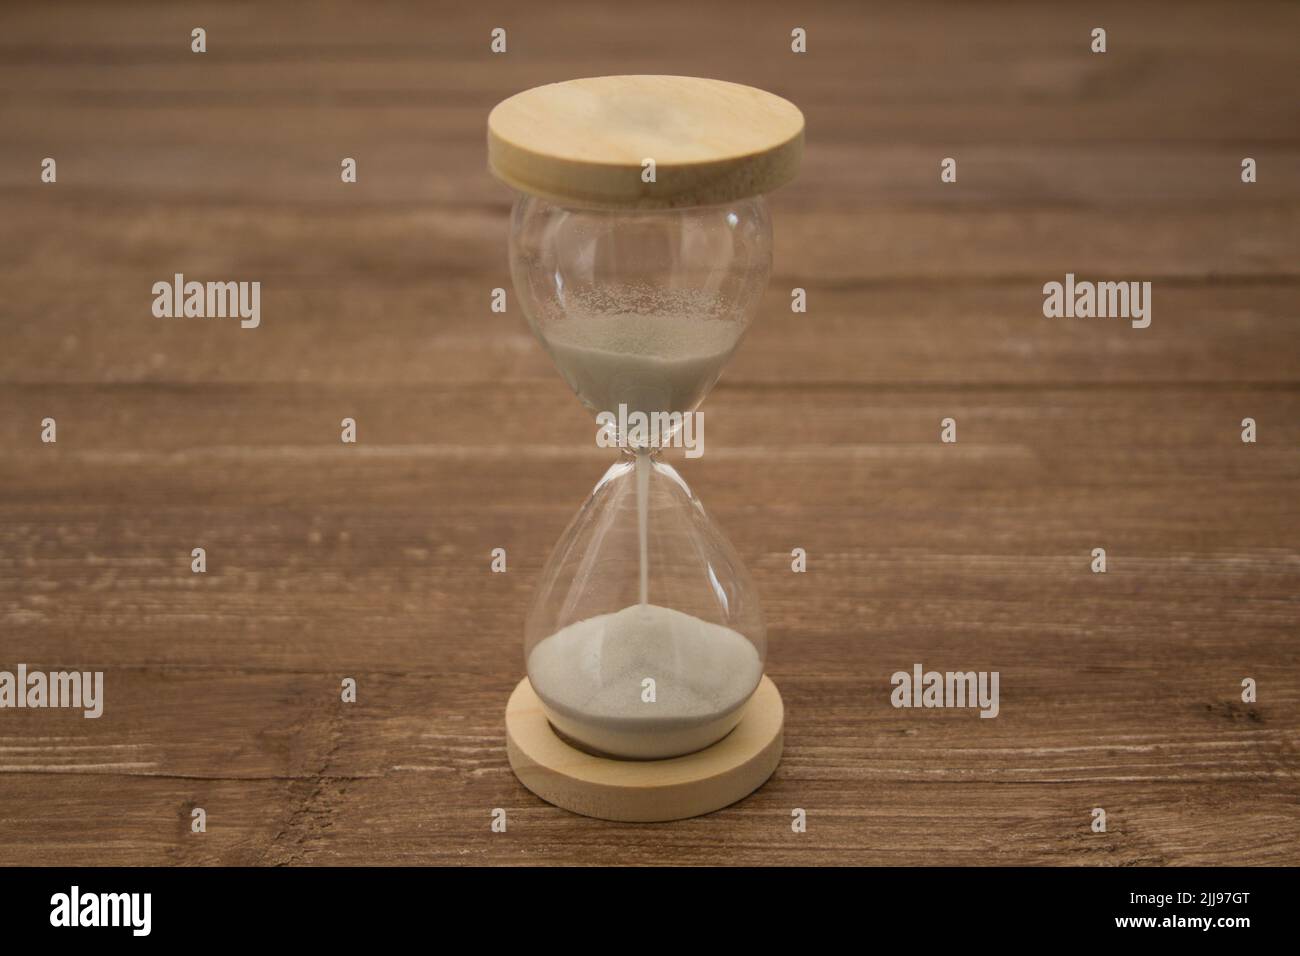 Imagen de un reloj de arena. Referencia al paso del tiempo Foto de stock